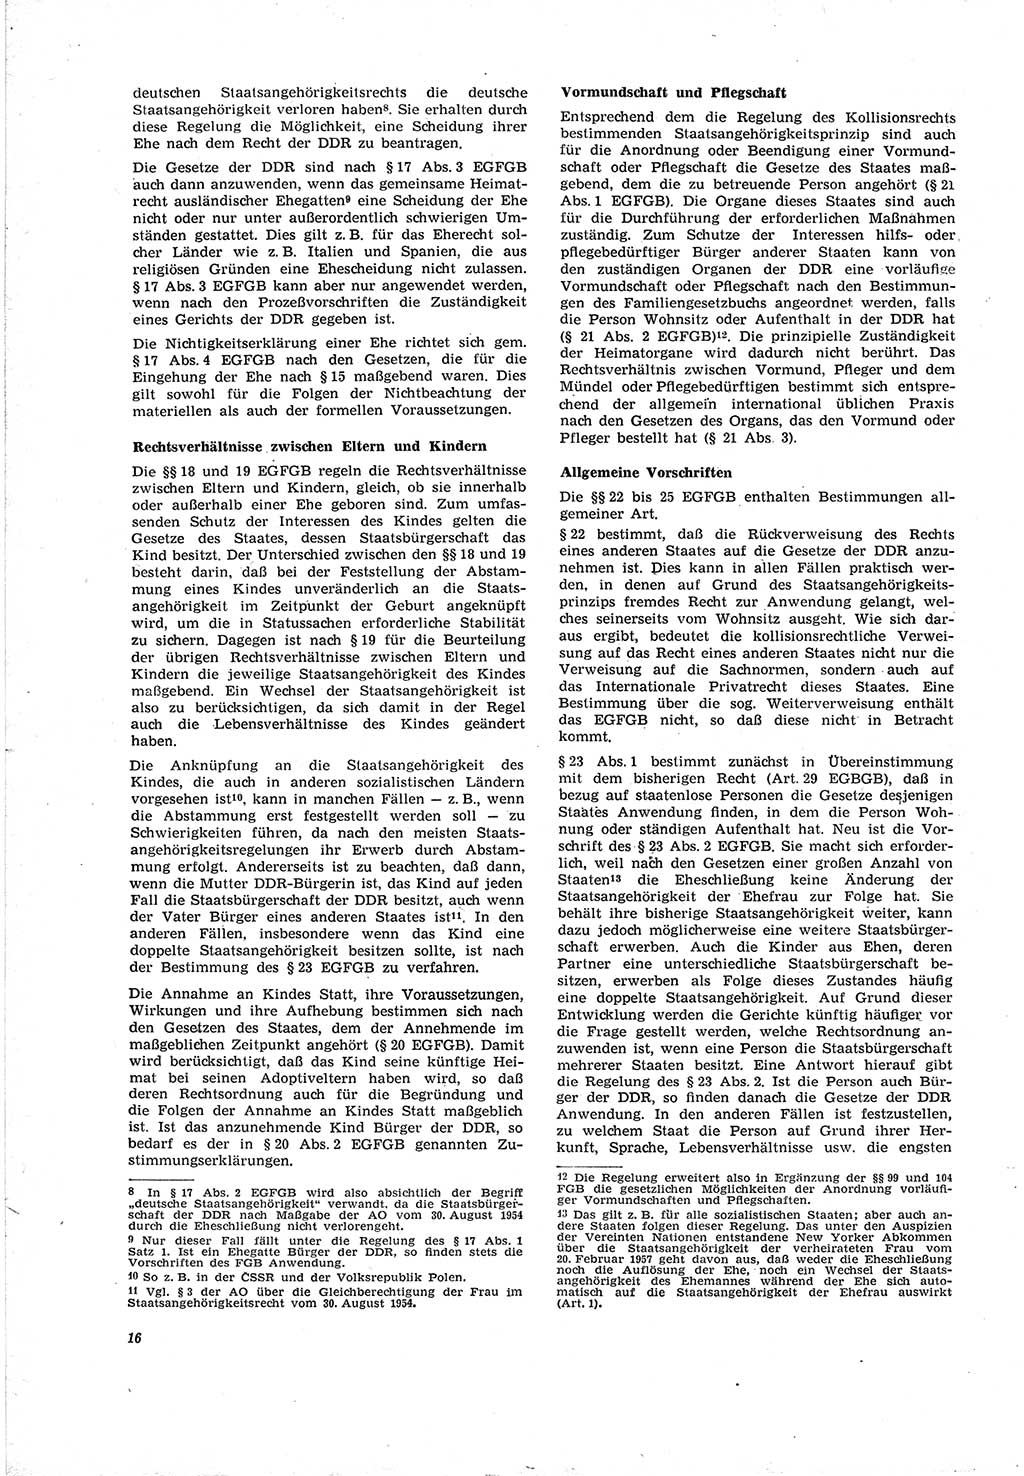 Neue Justiz (NJ), Zeitschrift für Recht und Rechtswissenschaft [Deutsche Demokratische Republik (DDR)], 20. Jahrgang 1966, Seite 16 (NJ DDR 1966, S. 16)